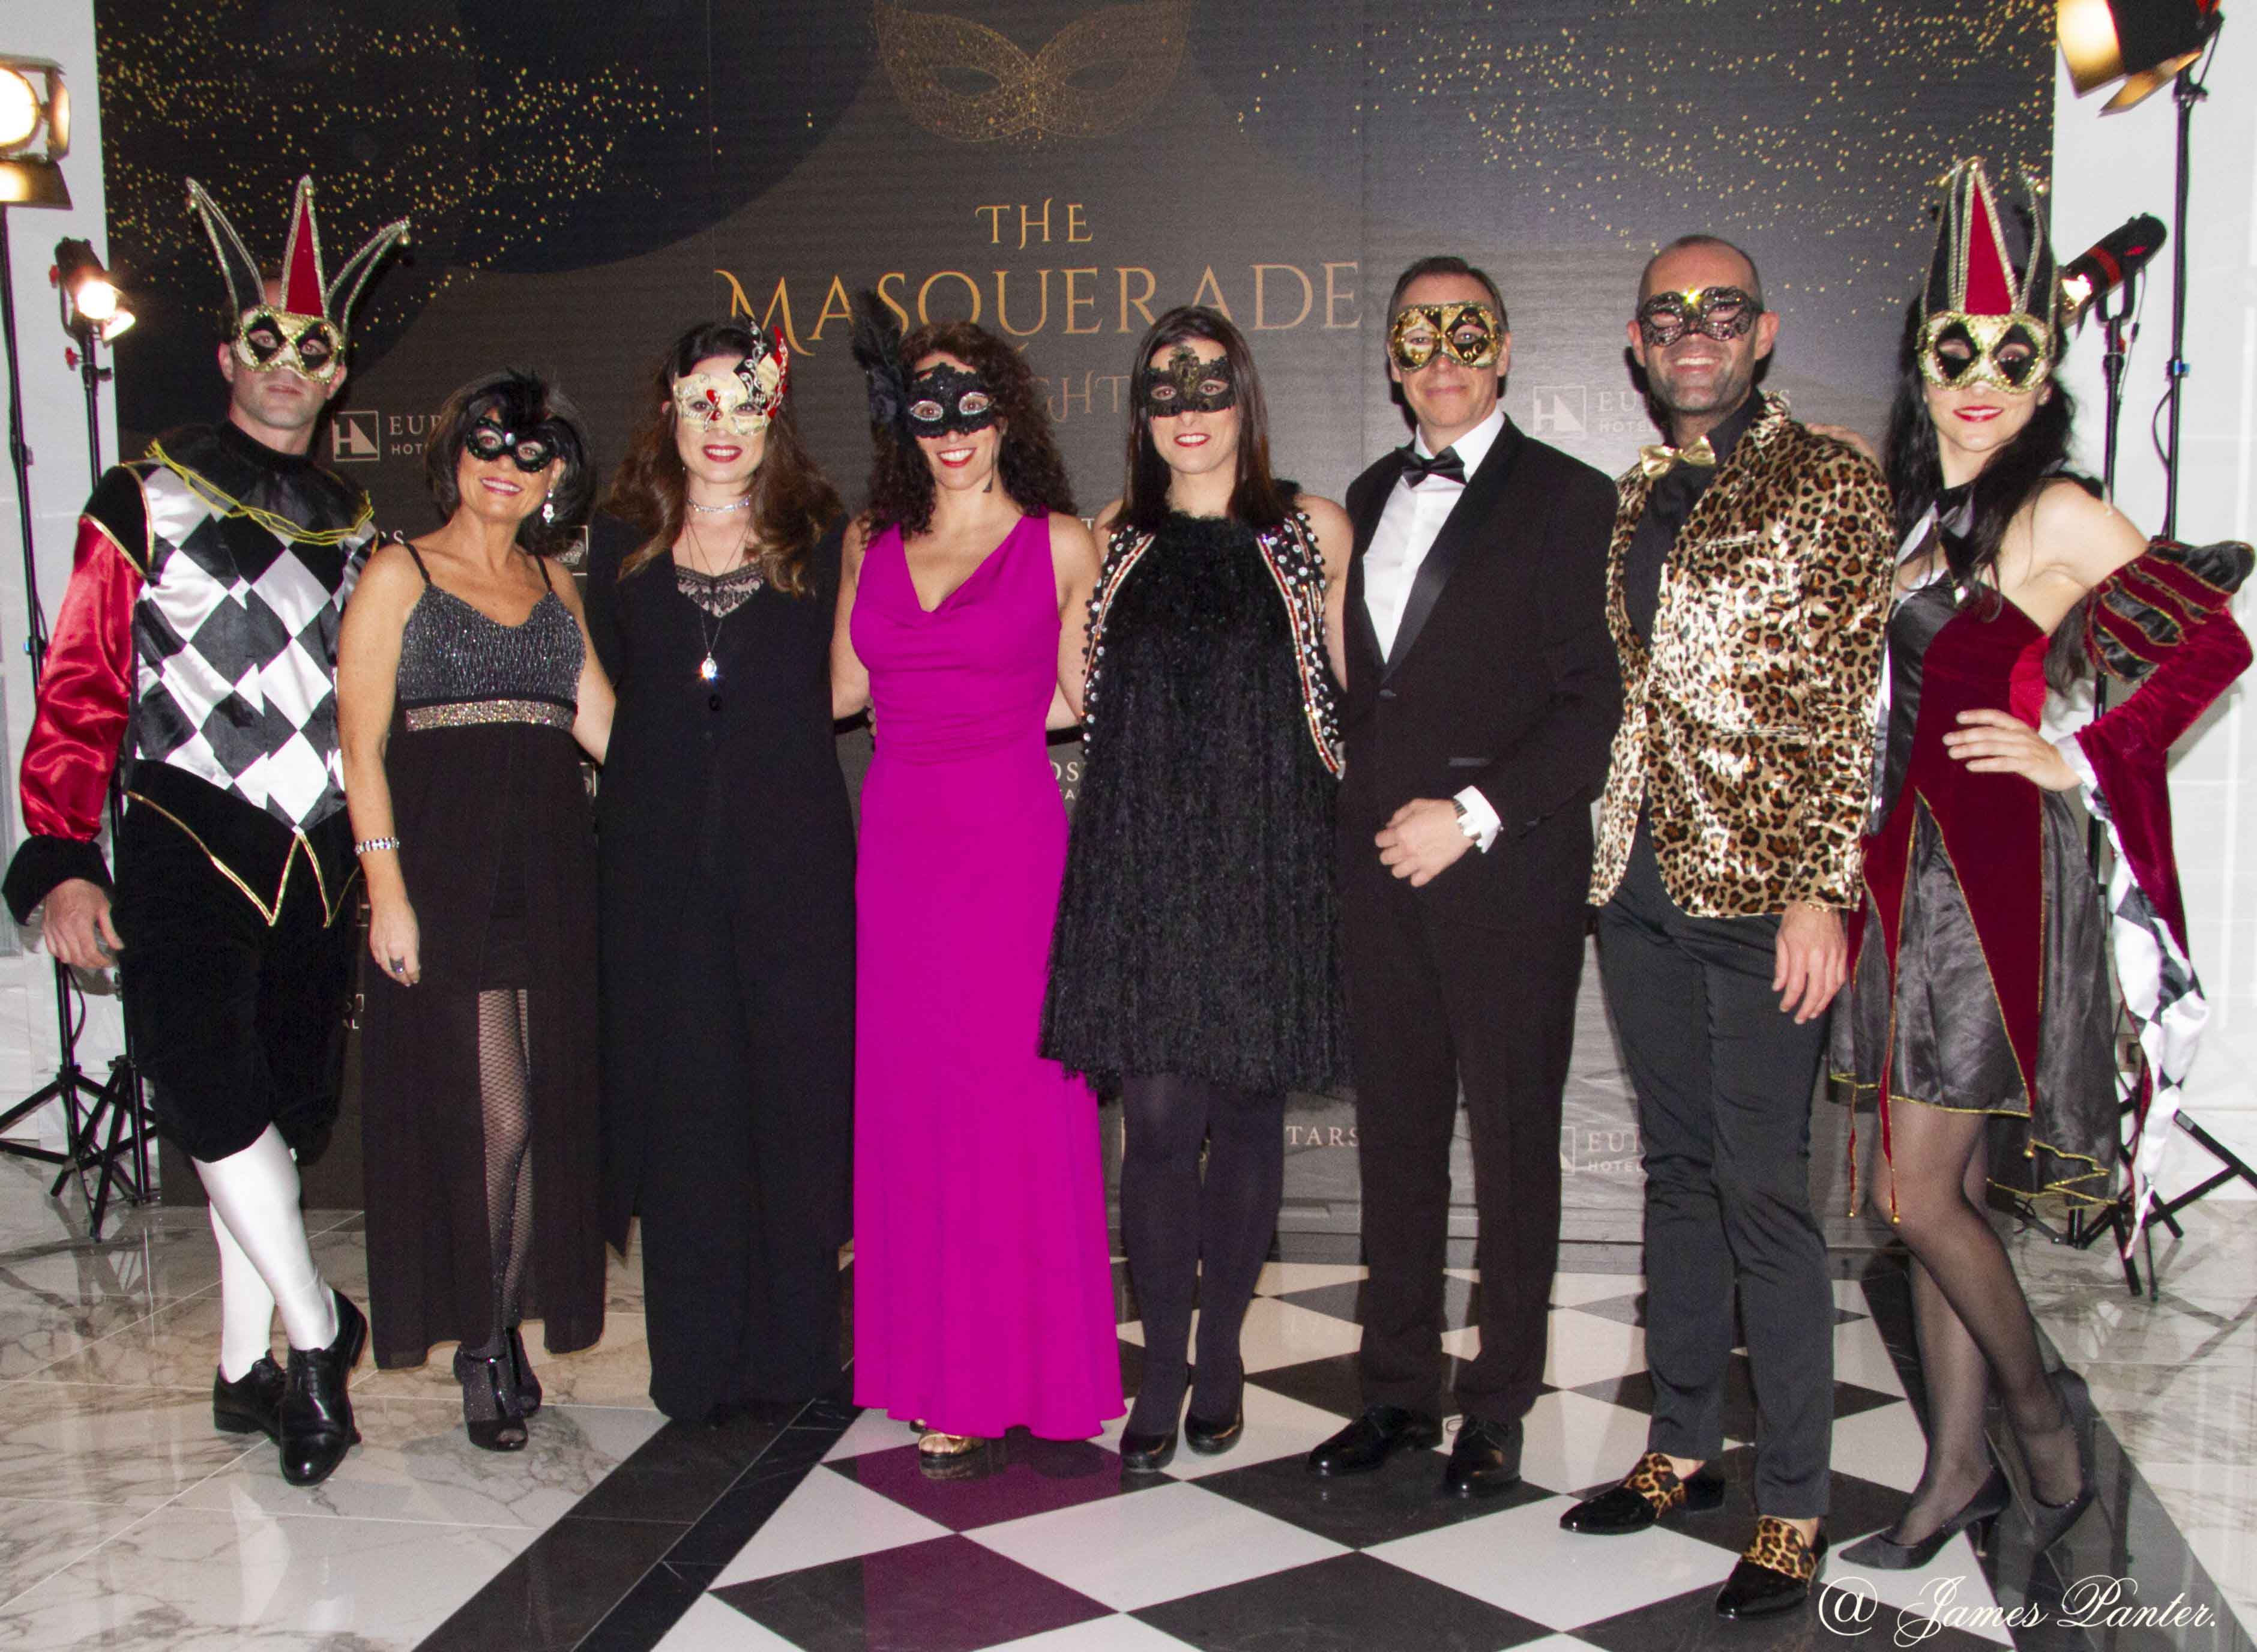 El Hotel Real organizó una cosmopolita fiesta de Carnaval con actuaciones en directo y premios para los mejores estilismos